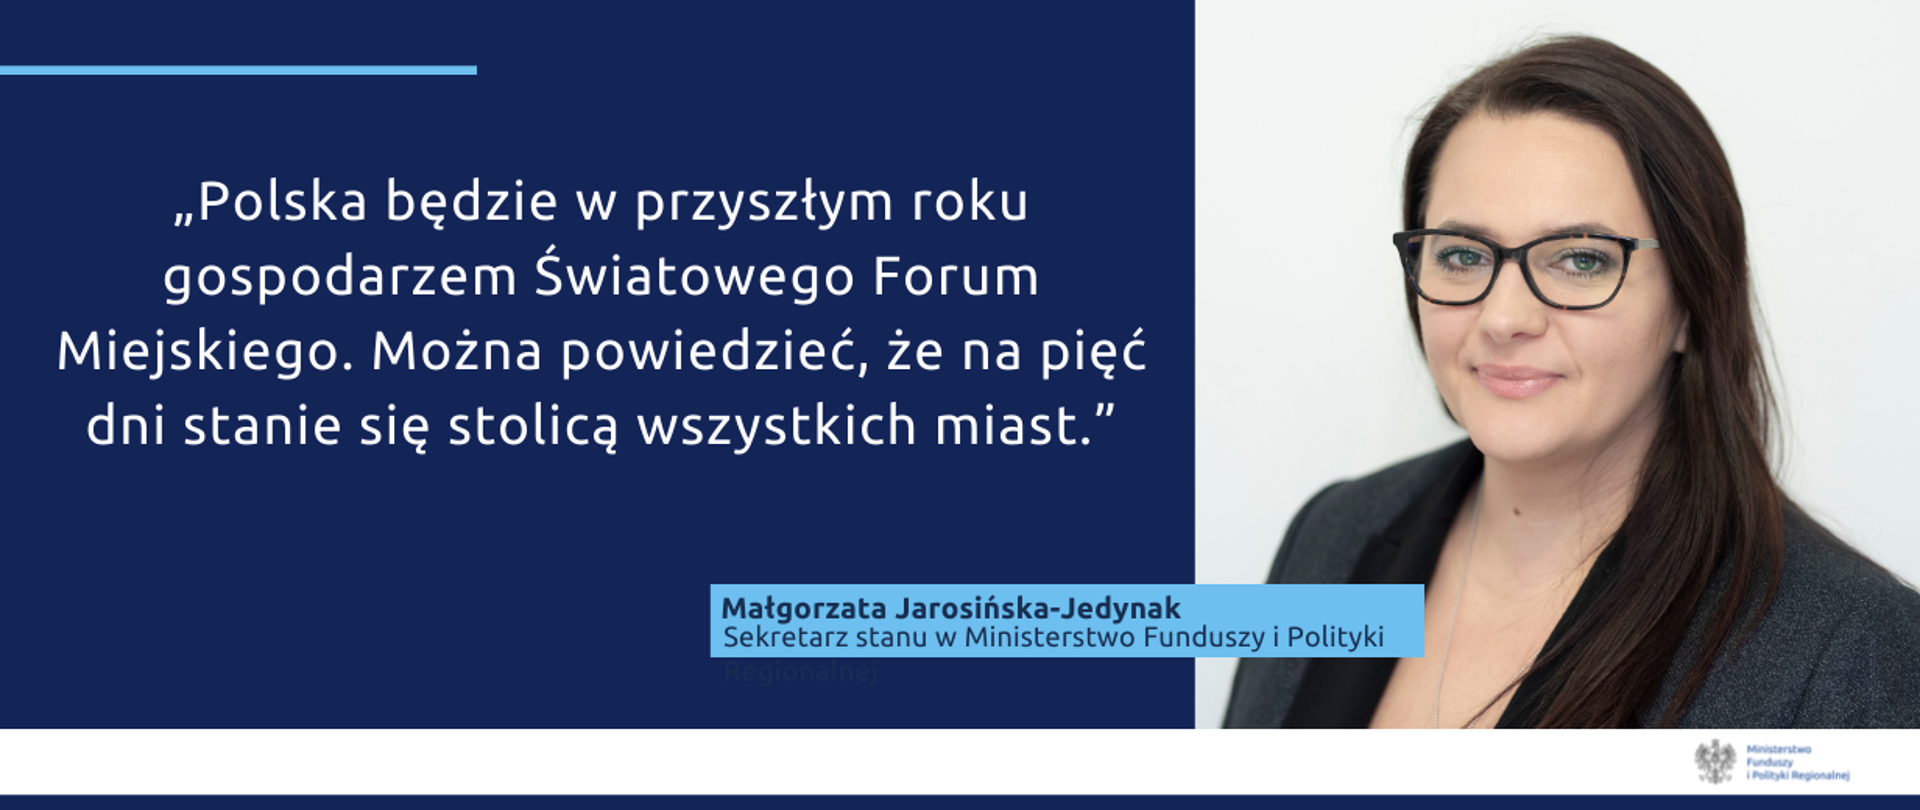 Na grafice zdjęcie wiceminister Małgorzaty Jarosińskiej-Jedynak oraz tekst: "Polska będzie w przyszłym roku gospodarzem Światowego Forum Miejskiego. Można powiedzieć, że na pięć dni stanie się stolicą wszystkich miast."